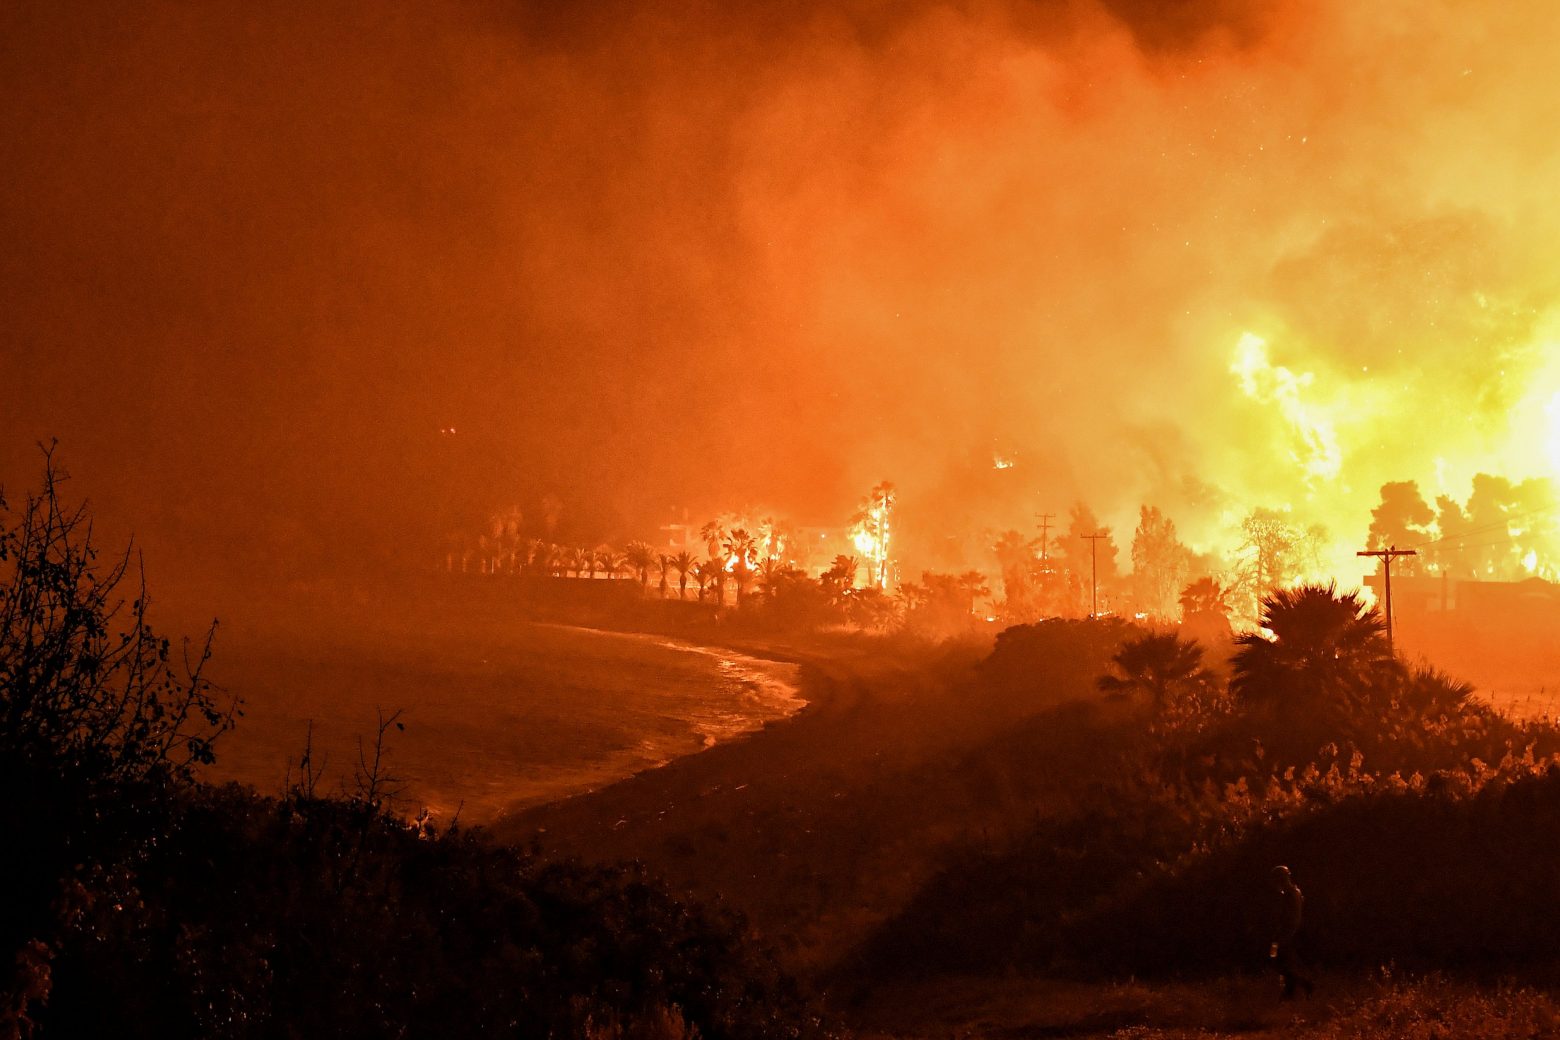 Μαίνεται ανεξέλεγκτη η φωτιά: Σε πύρινο κλοιό τα Μέγαρα - Θυελλώδεις άνεμοι και εκκενώσεις οικισμών